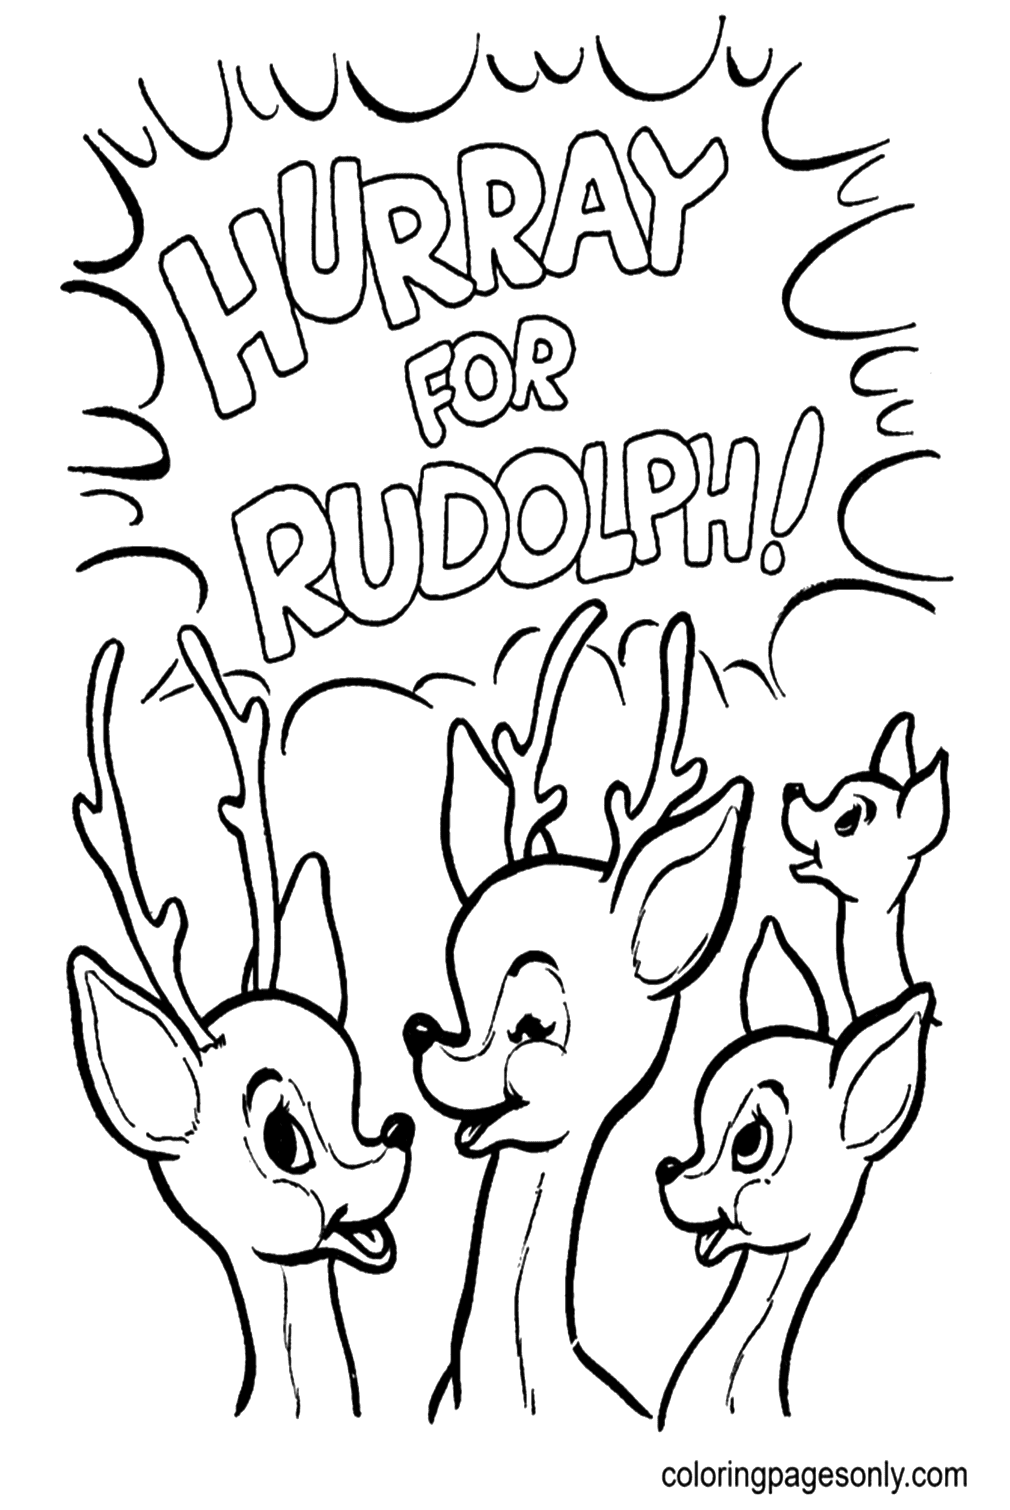 Hurra por Rudolph de Reindeer